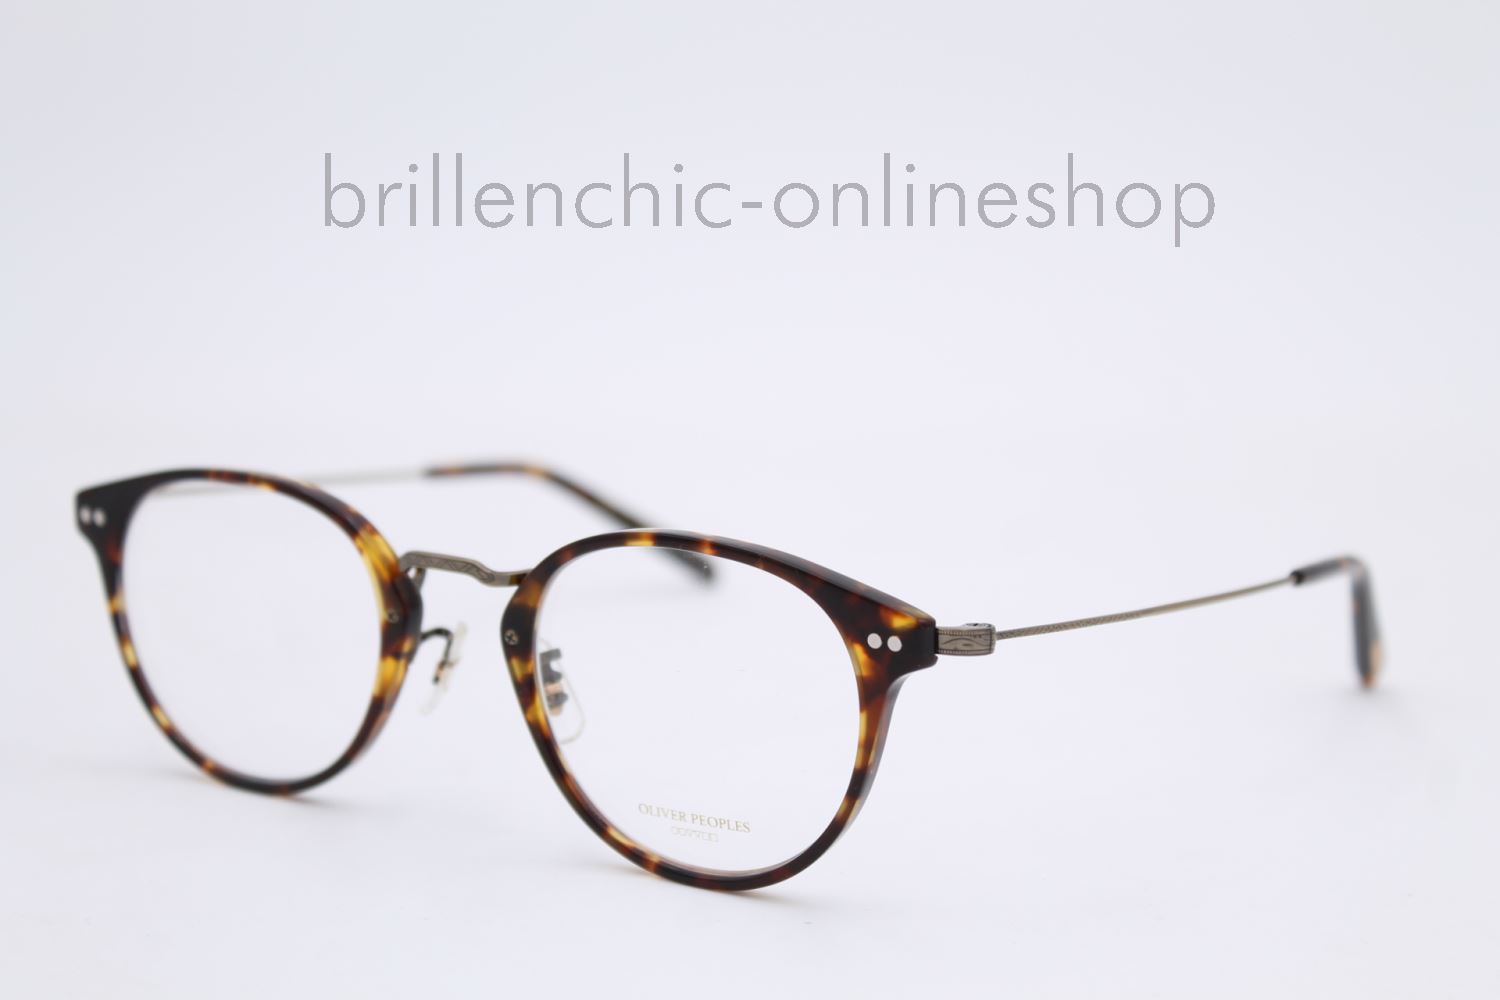 Brillenchic - onlineshop Berlin Ihr starker Partner für exklusive Brillen  online kaufen/OLIVER PEOPLES CODEE OV 5423U 5423 1654 exklusiv im  Brillenchic-Onlineshop